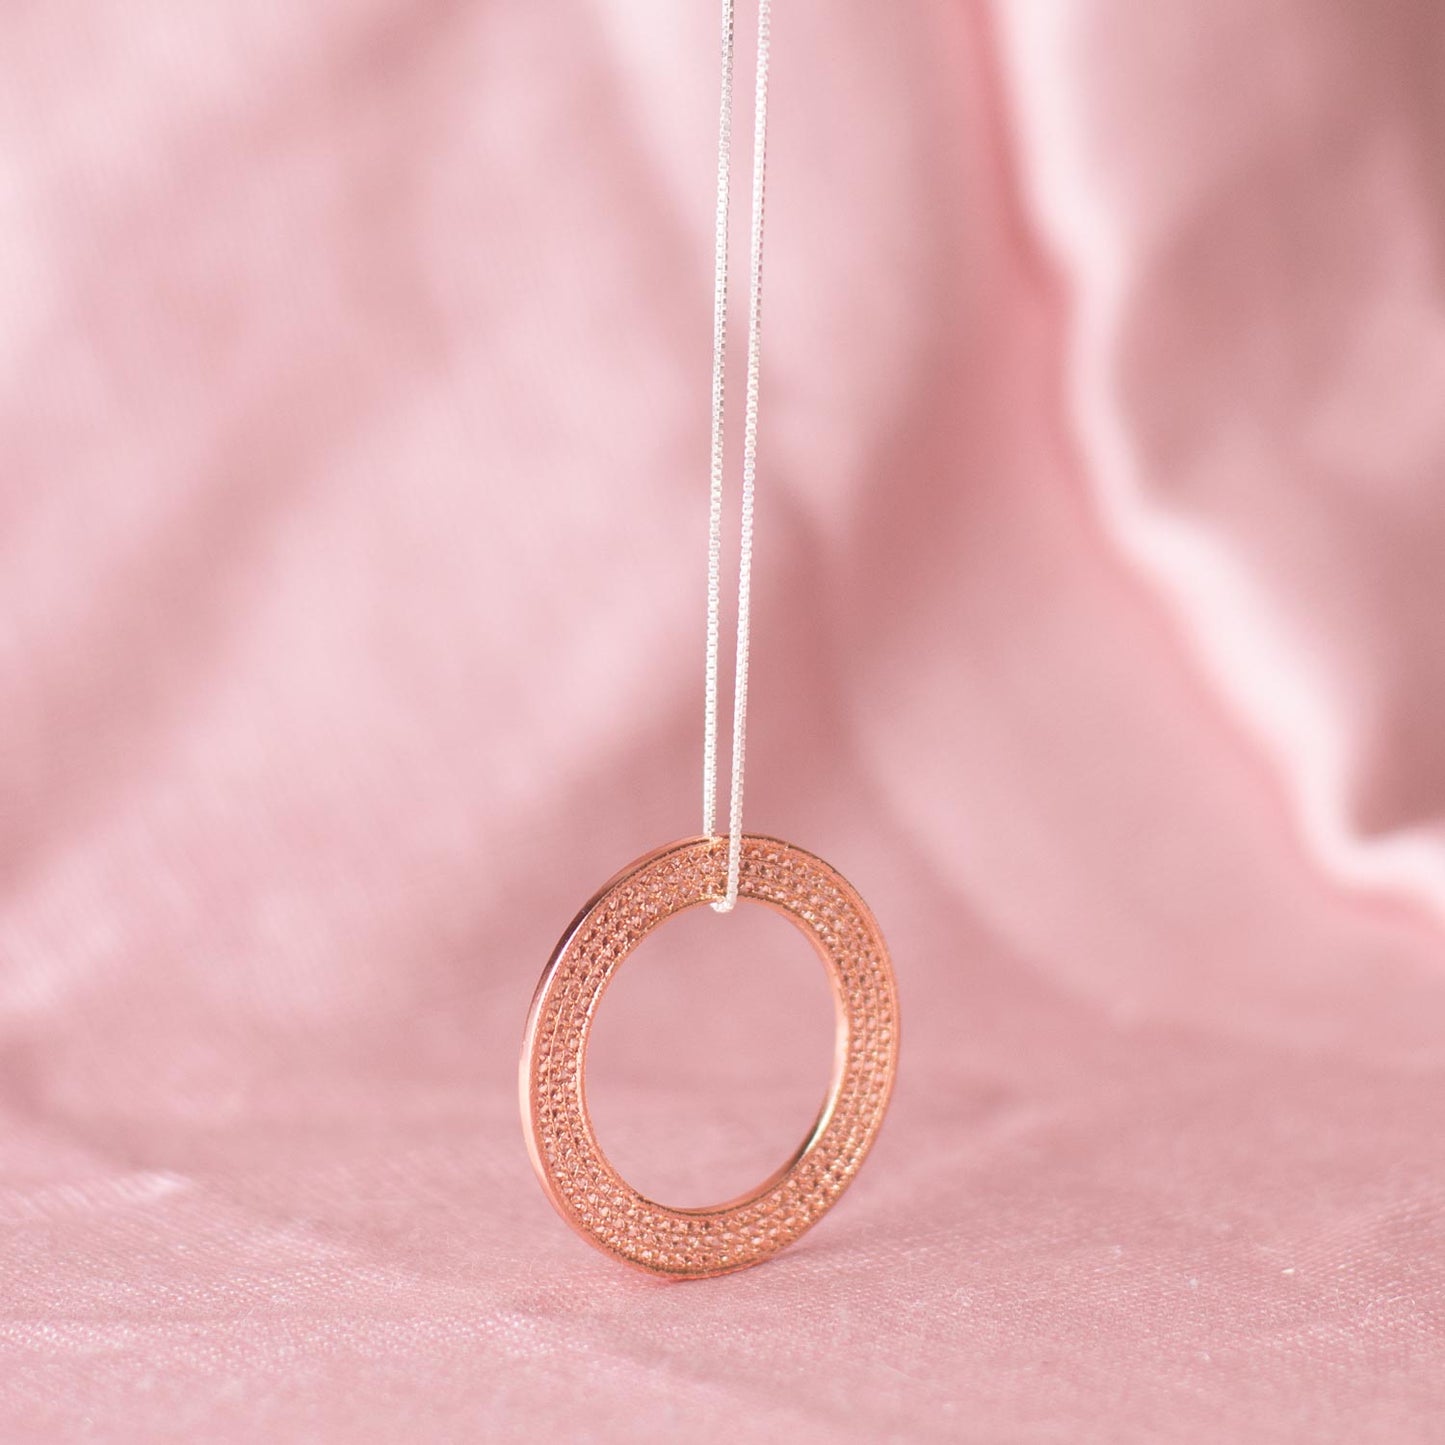 Gargantilla collar en filigrana momposina con aro de filigrana elaborada en plata 9.80 con chapado en oro de 24 kilates y oro rosa con protección en laca cataforética. 